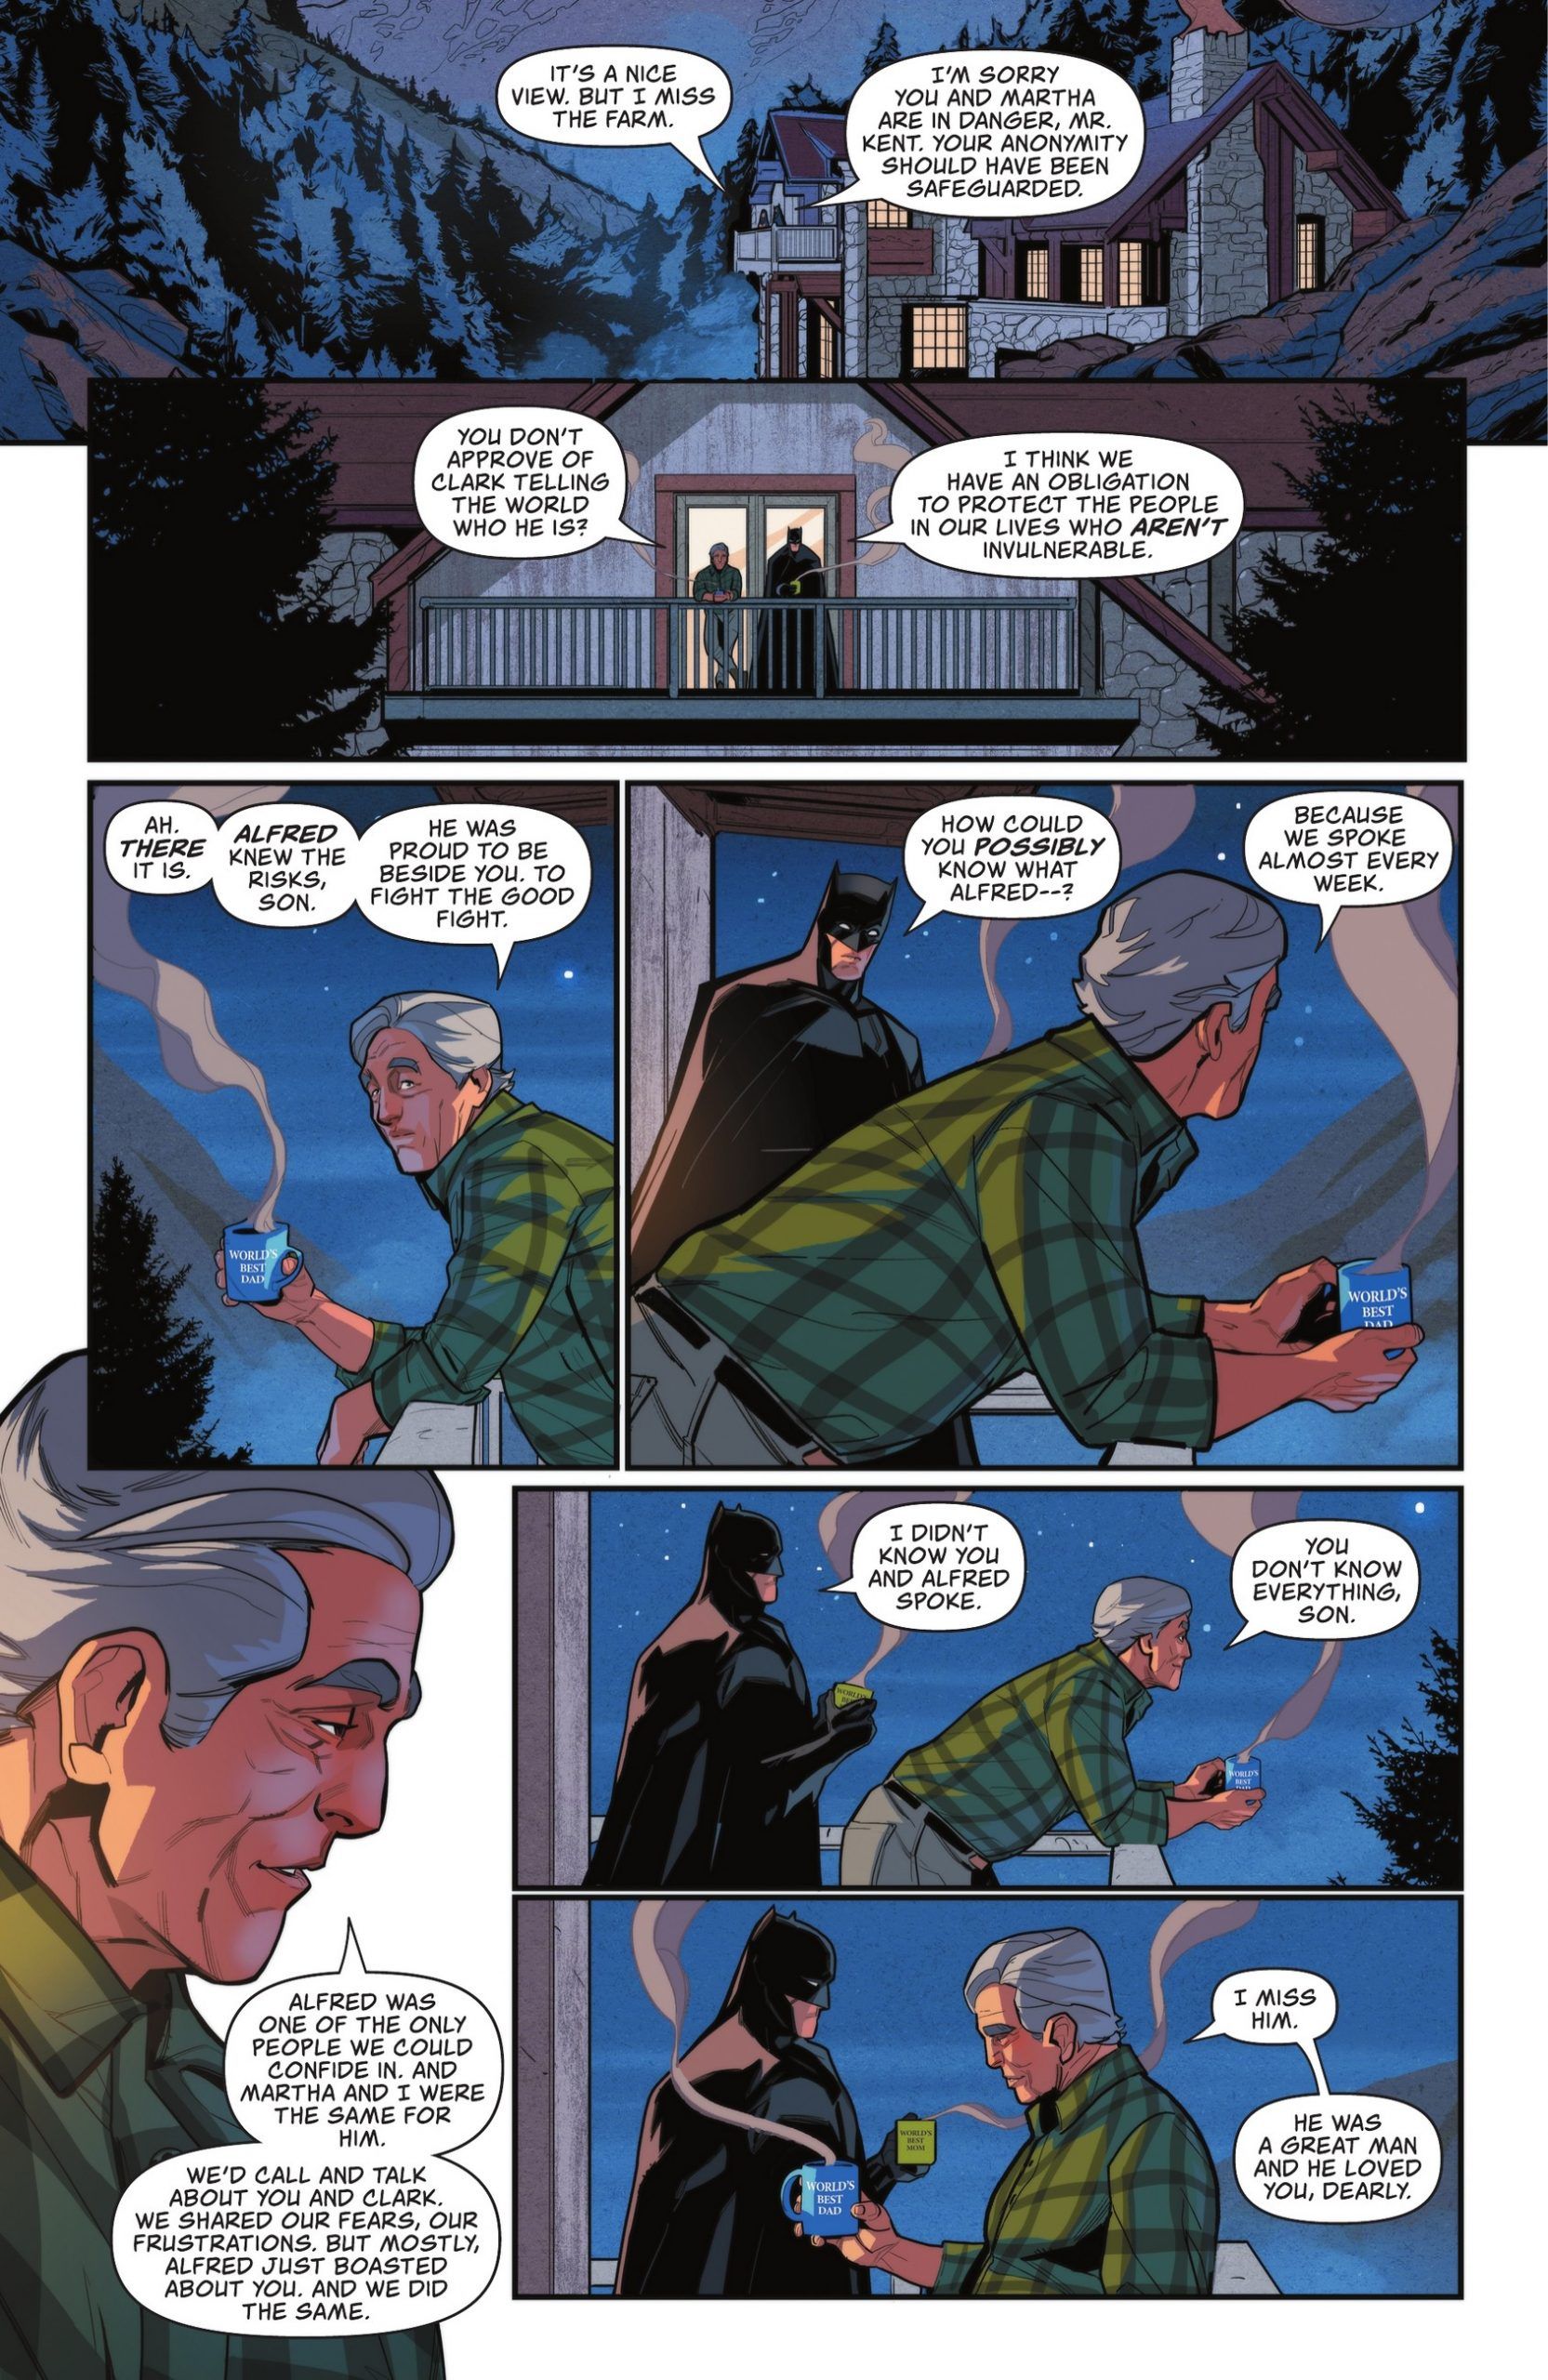 DC Reveals a New, Uplifting Secret Involving Batman and Superman